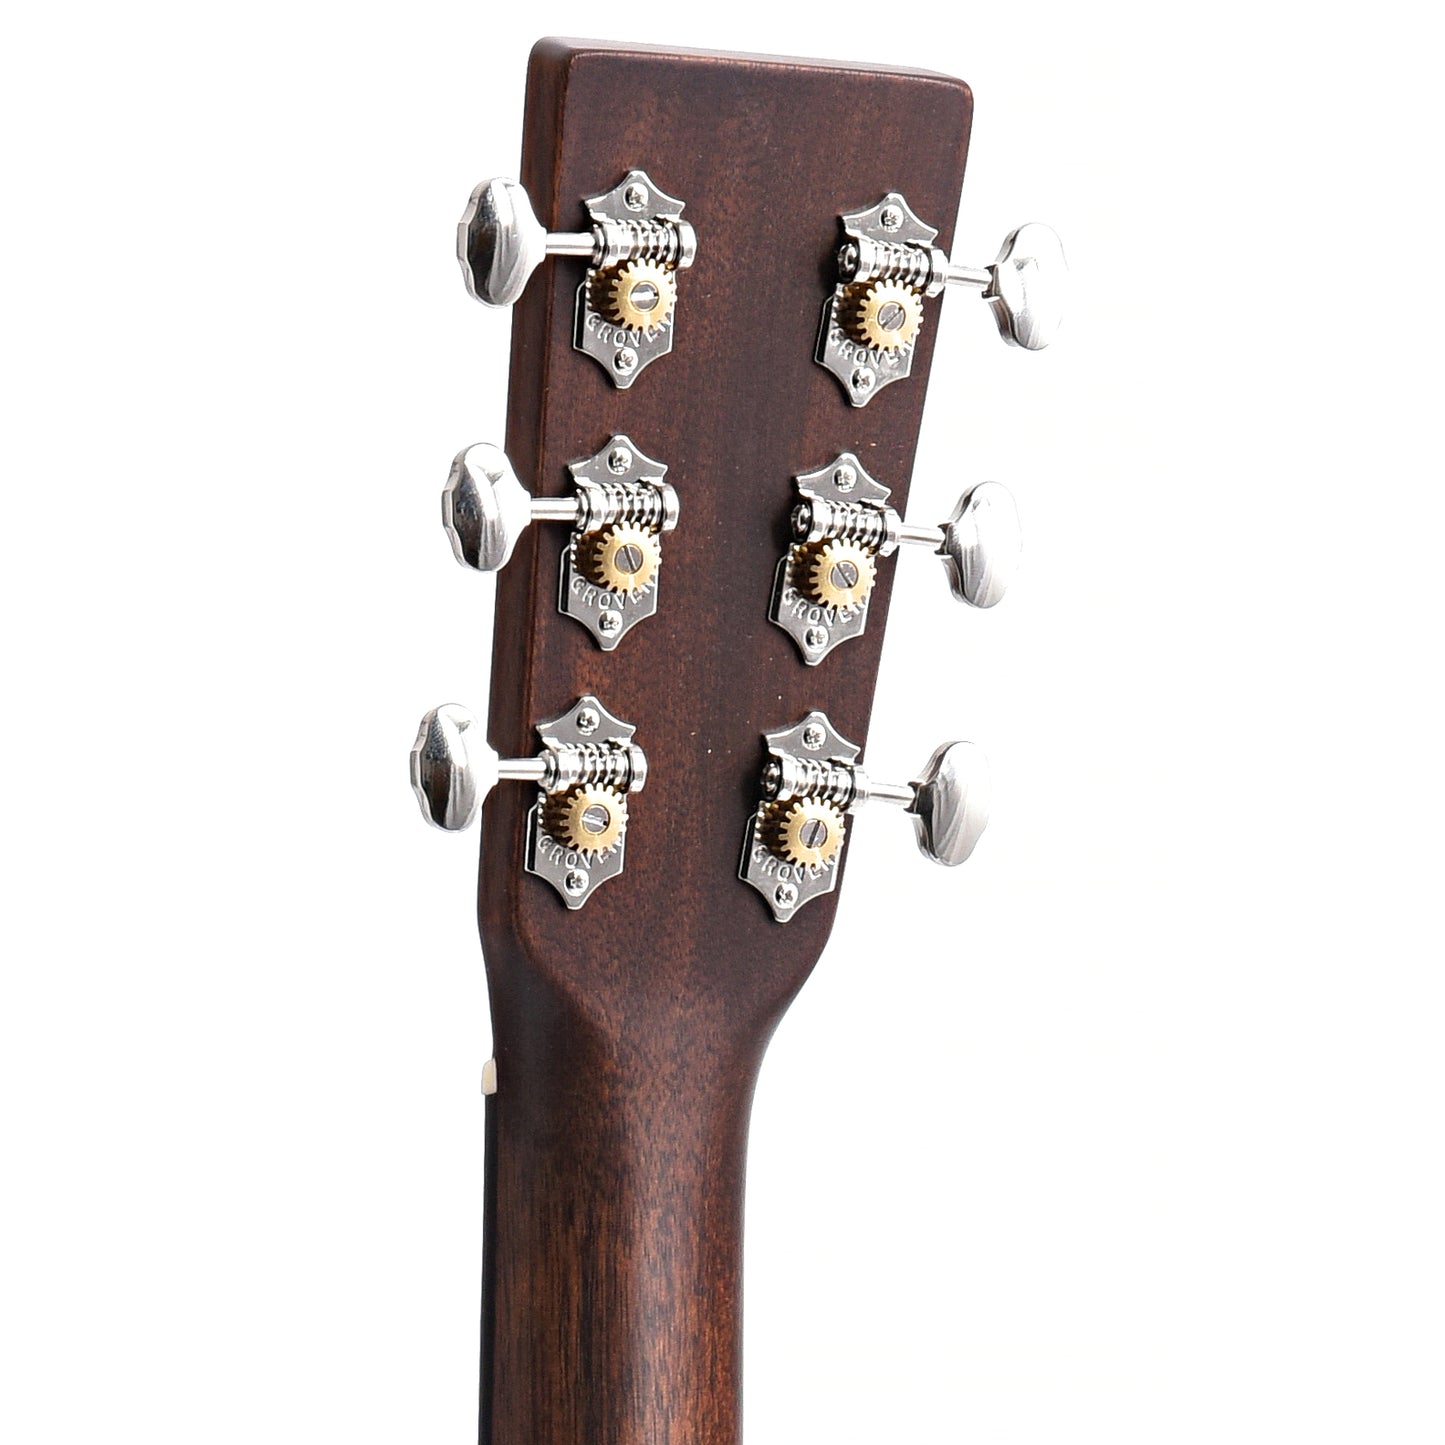 Back Headstock of Martin GPC-16E Mahogany Cutaway Guitar